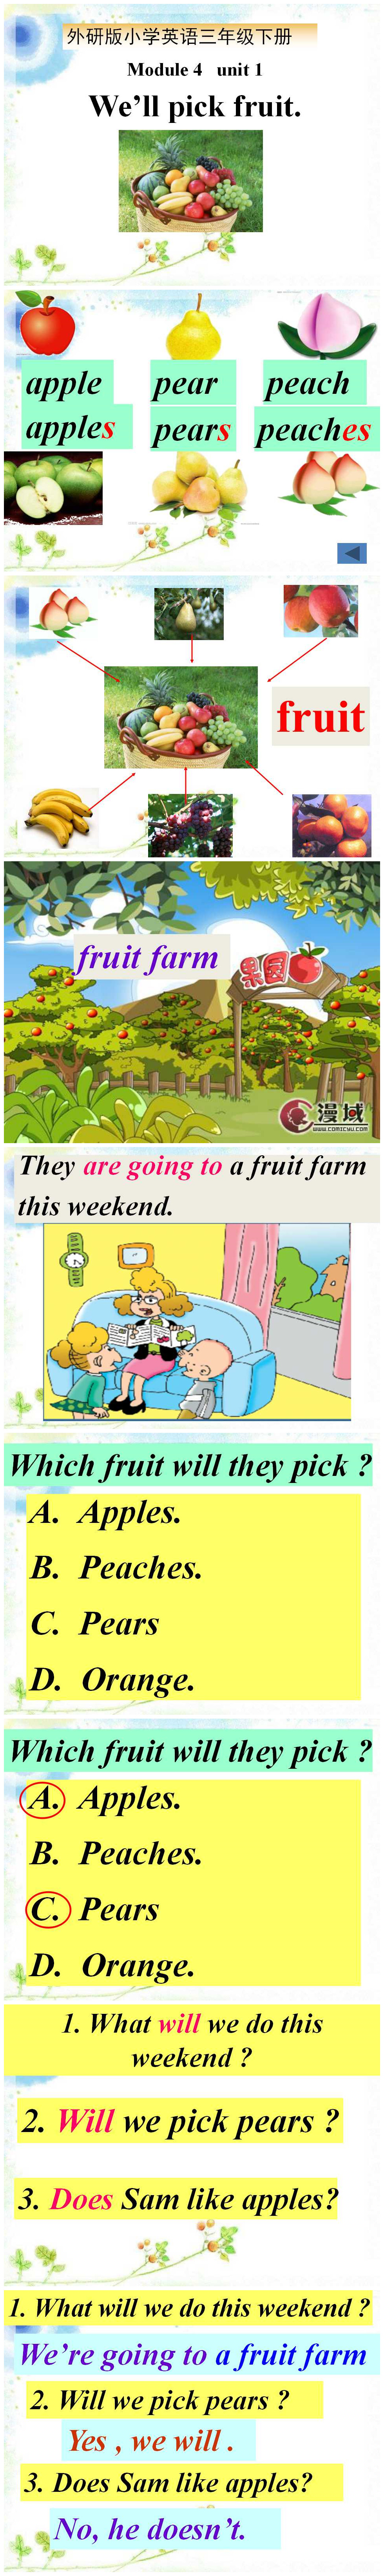 《We'll pick fruit》PPT课件3PPT课件下载